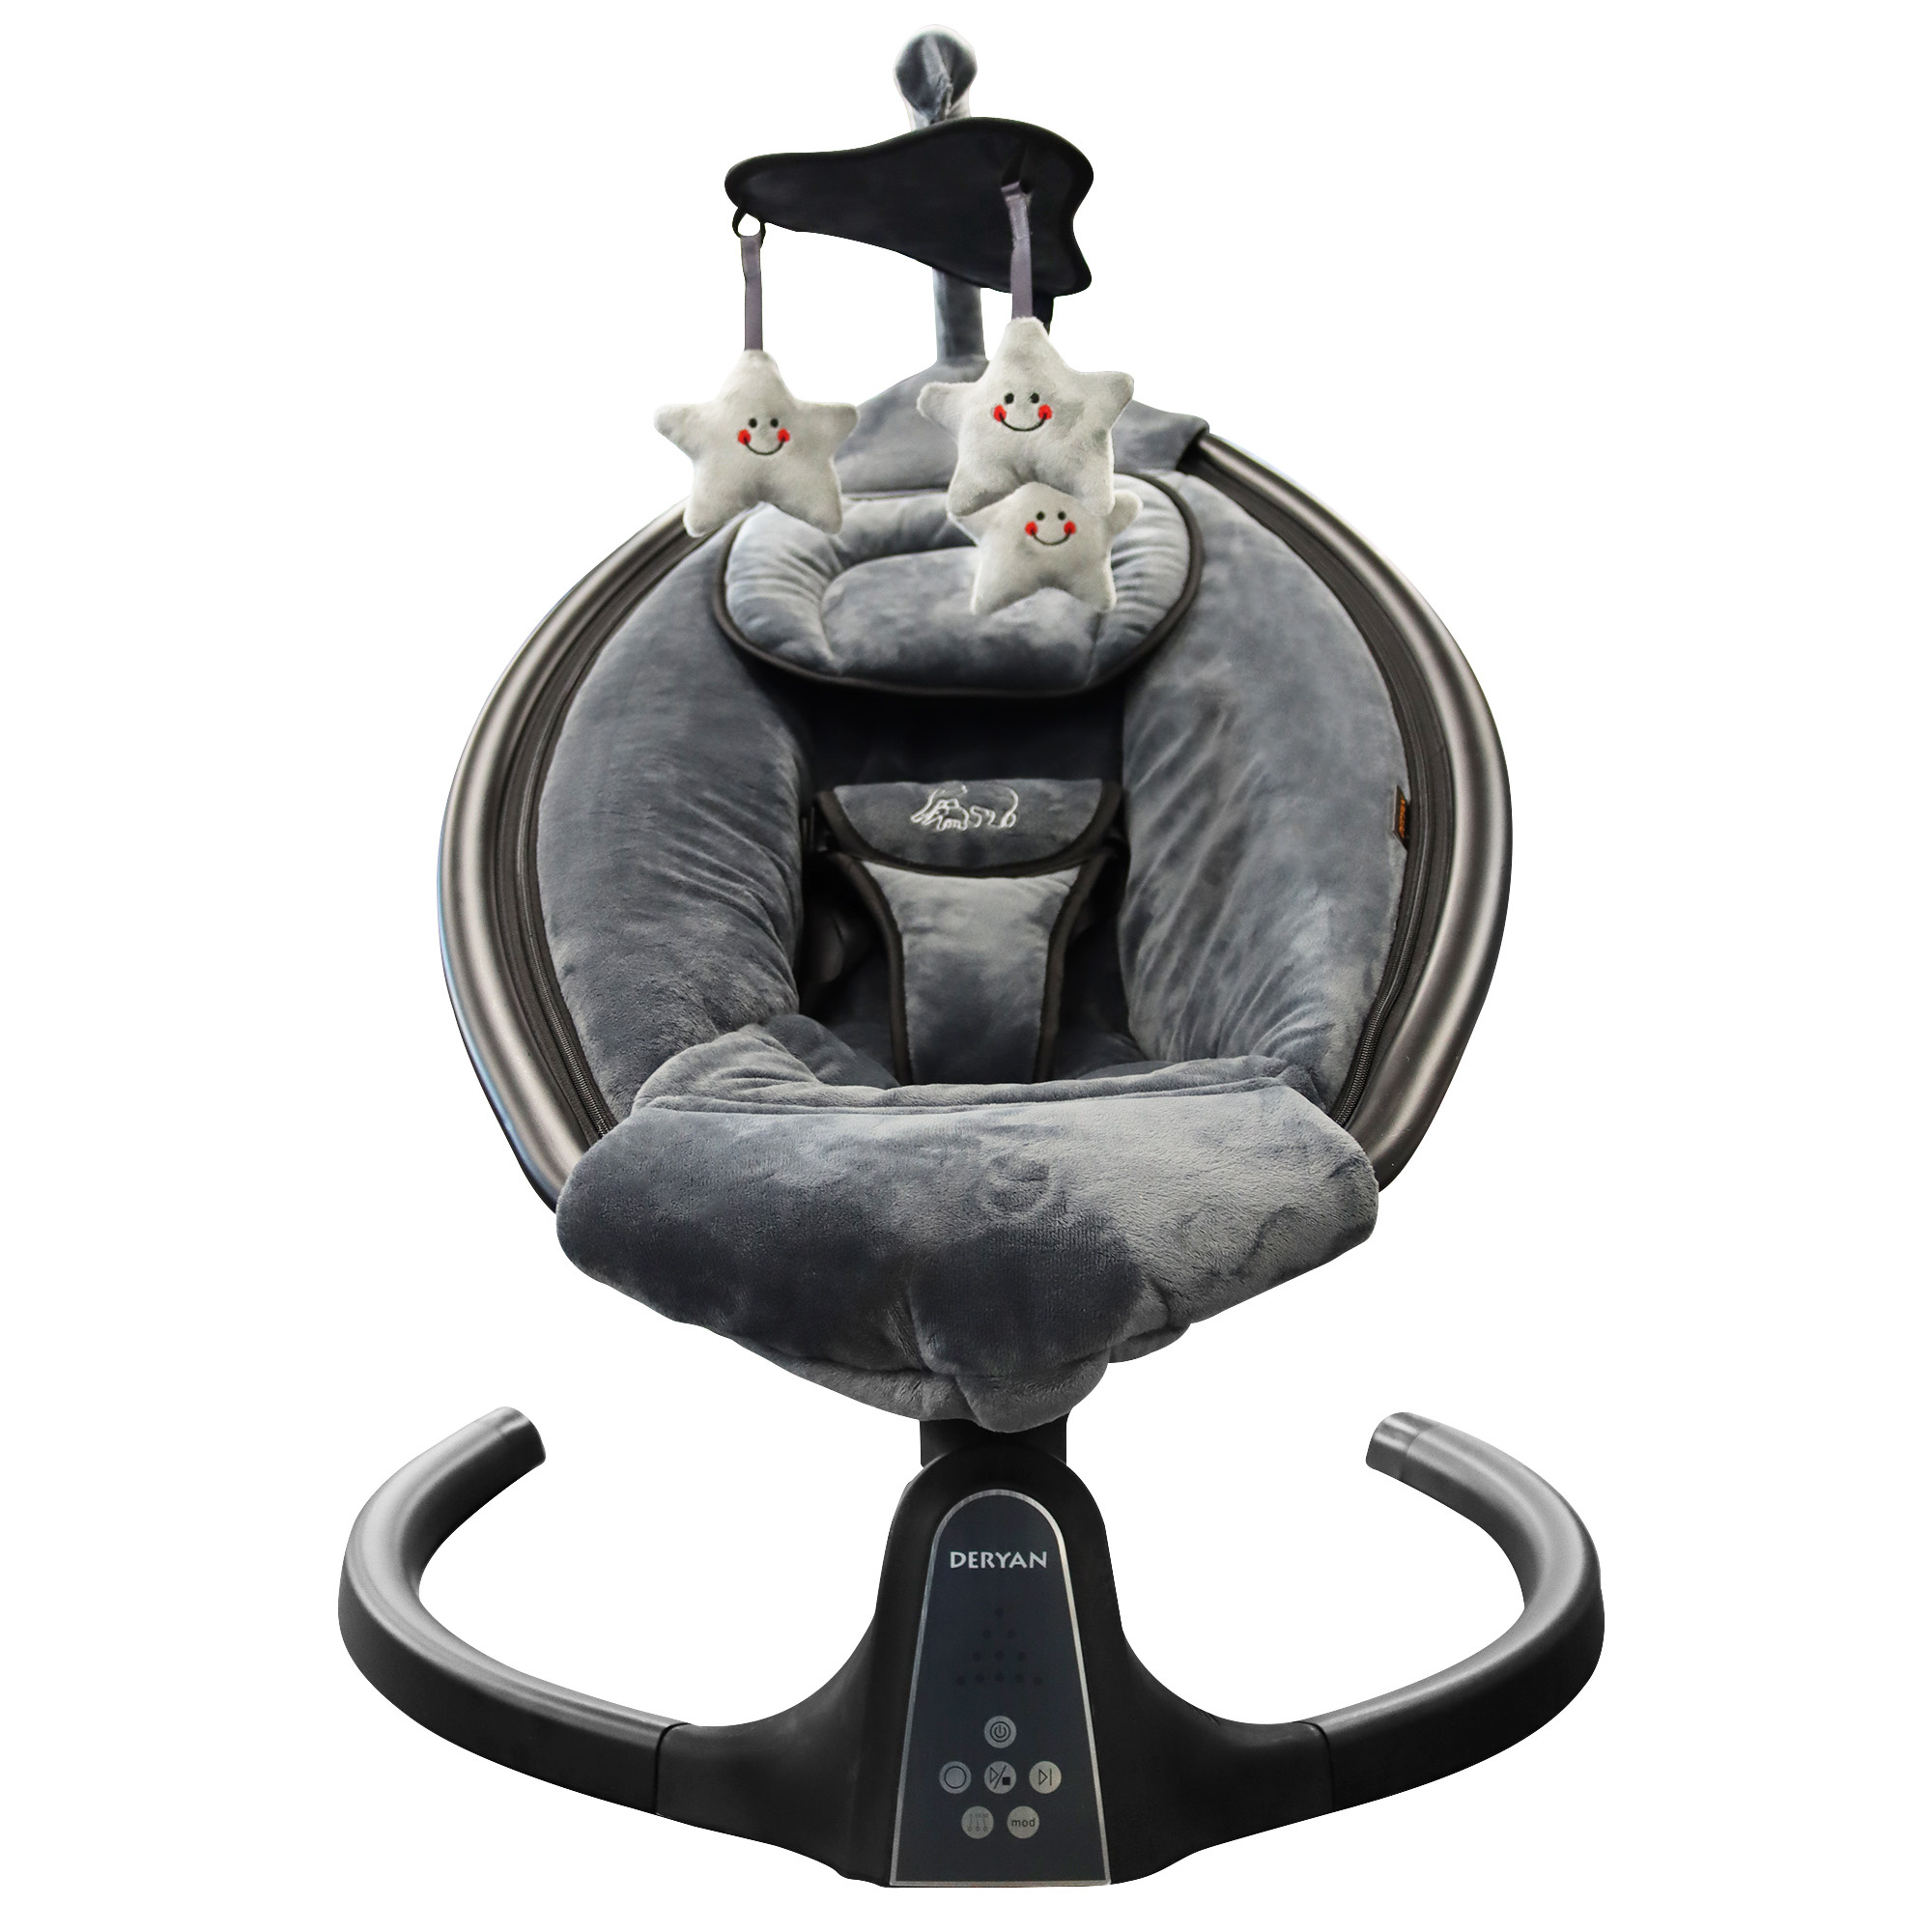 Deryan Baby Wipstoel - Schommelstoel - Elektrische schommel baby - Schommelstoel met Bluetoothfunctie en Afstandsbediening - BABY-PHANT